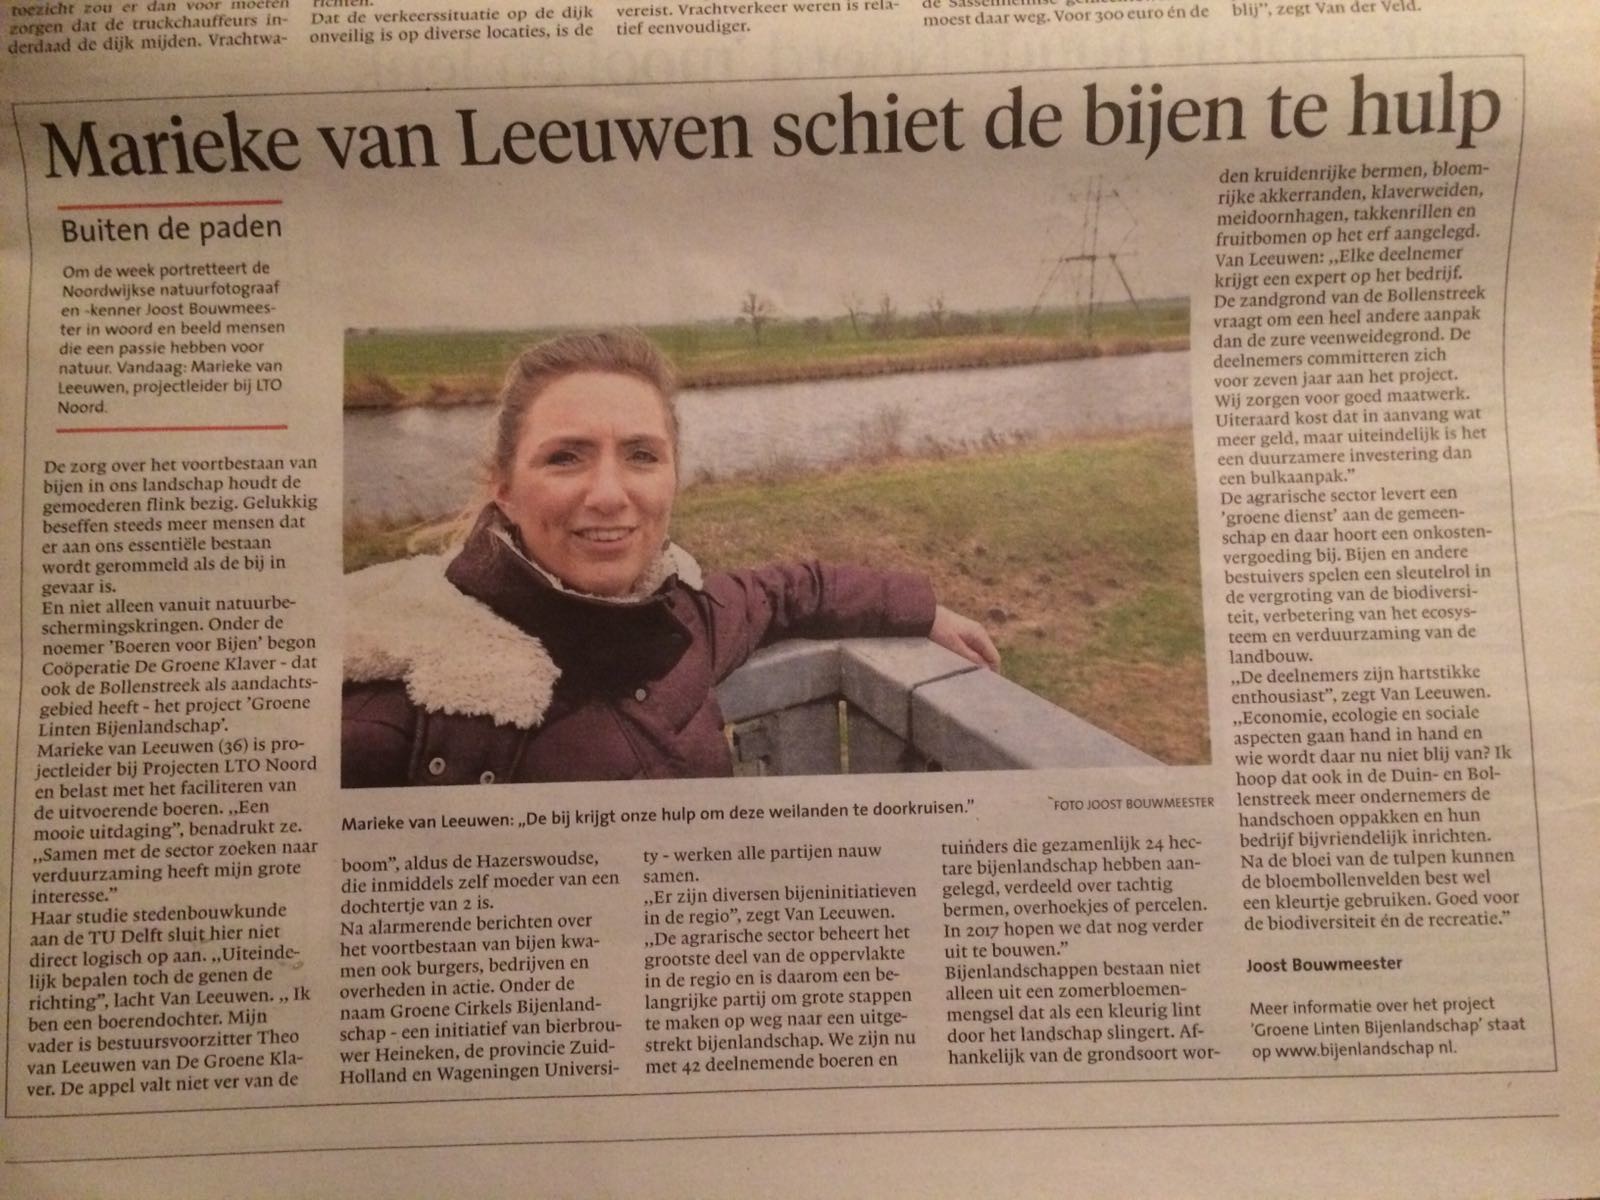 Marieke van Leeuwen in de Volkskrant